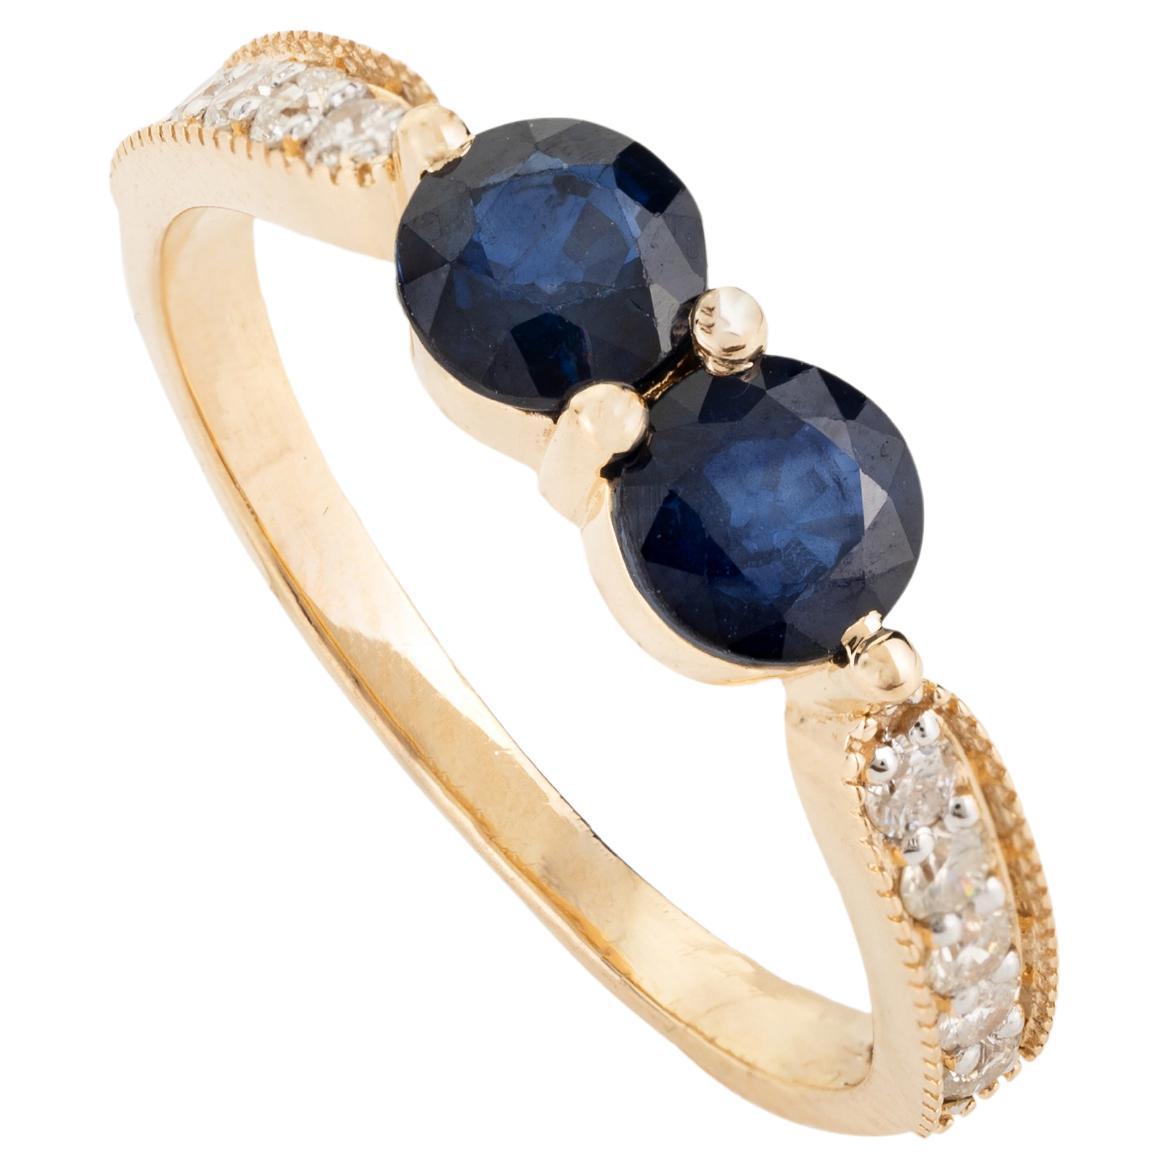 18 Karat massives Gelbgold Ring mit zwei Steinen, blauem Saphir und Diamant, Hochzeitsgeschenk für sie